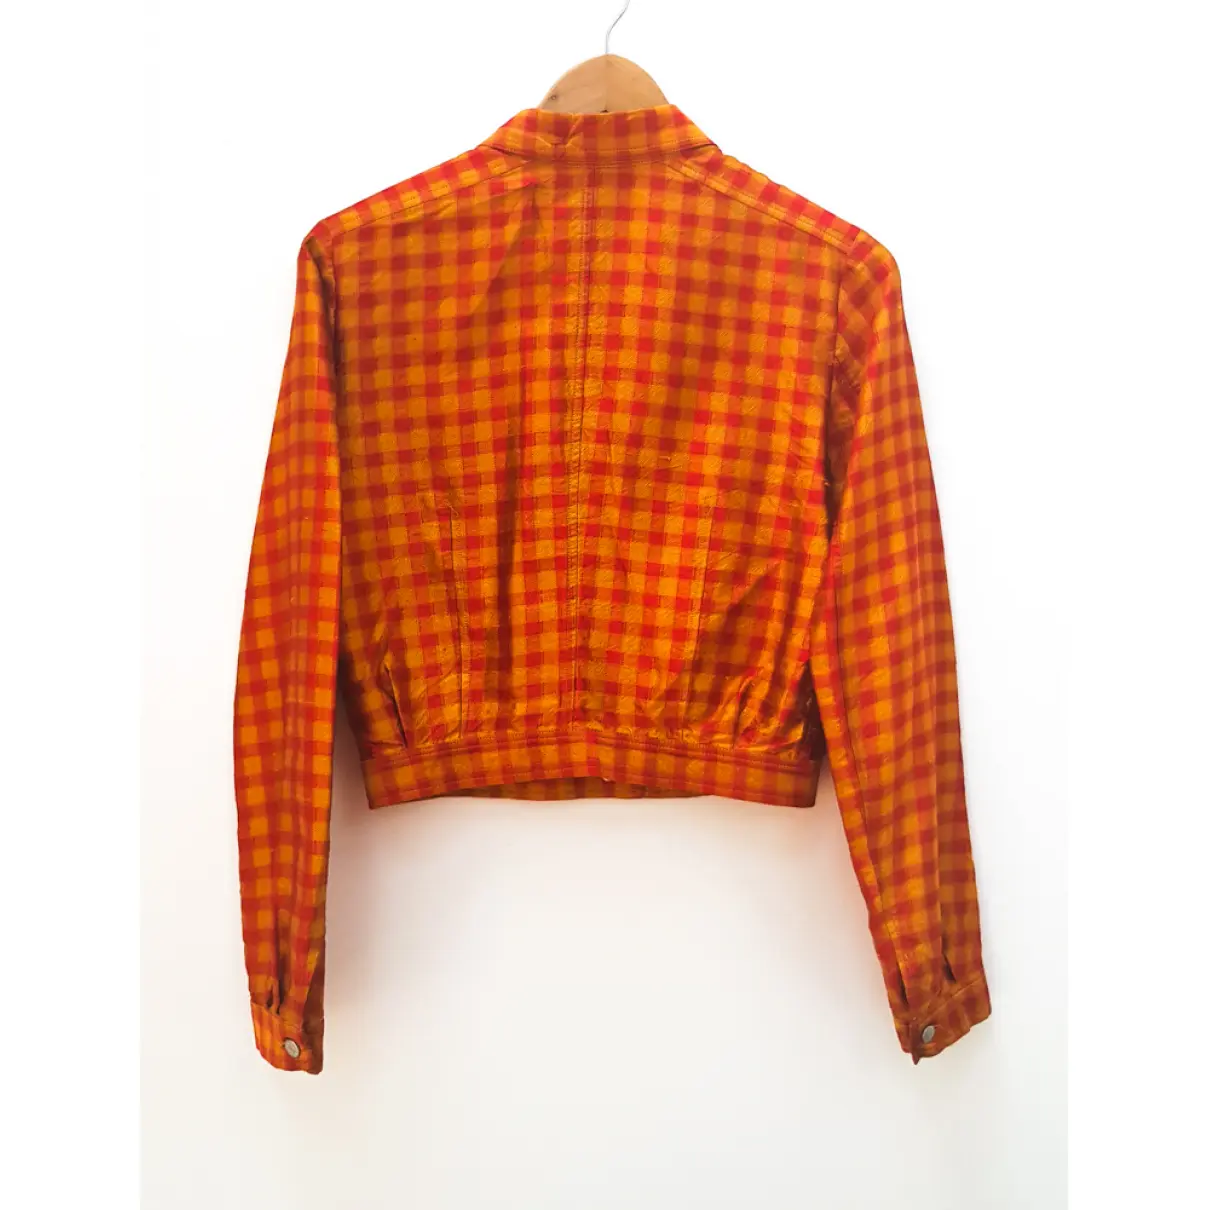 Buy Dries Van Noten Silk jacket online